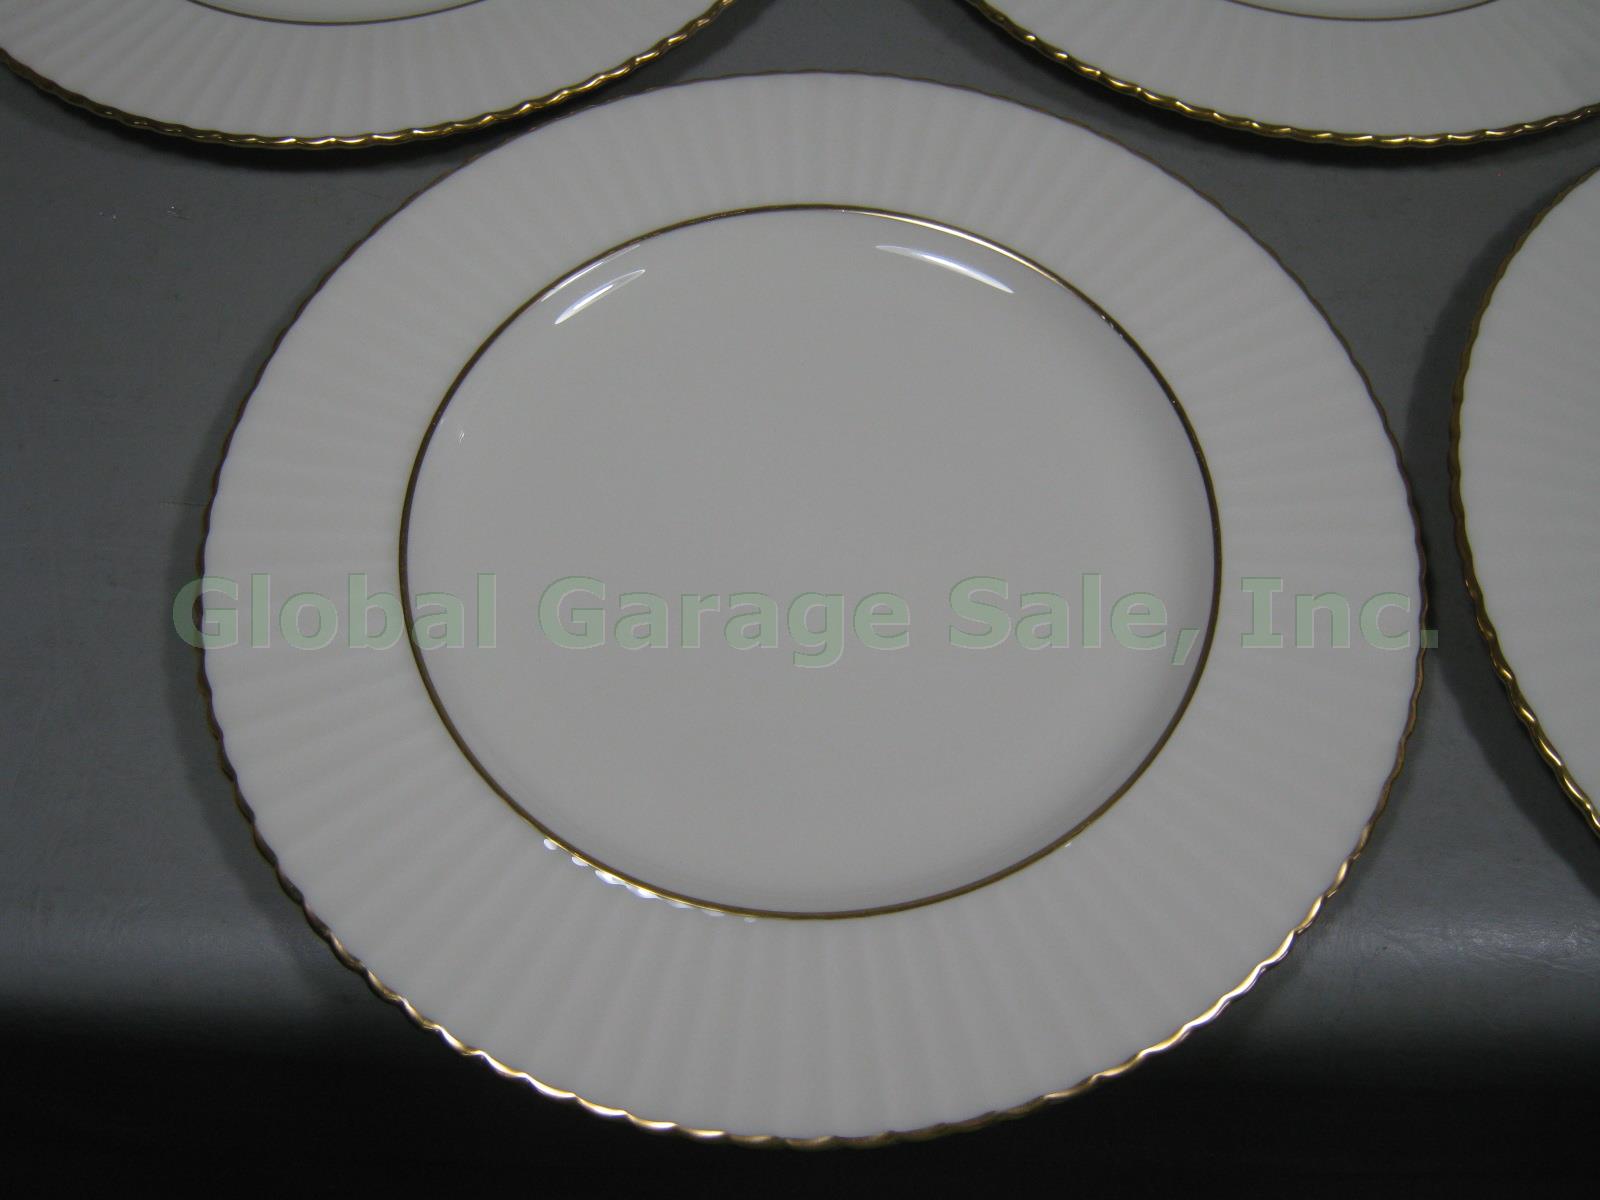 8 Lenox Gold Rim Trim Dinner Plates Set 11" Colonnade Temple Collection Citation 1